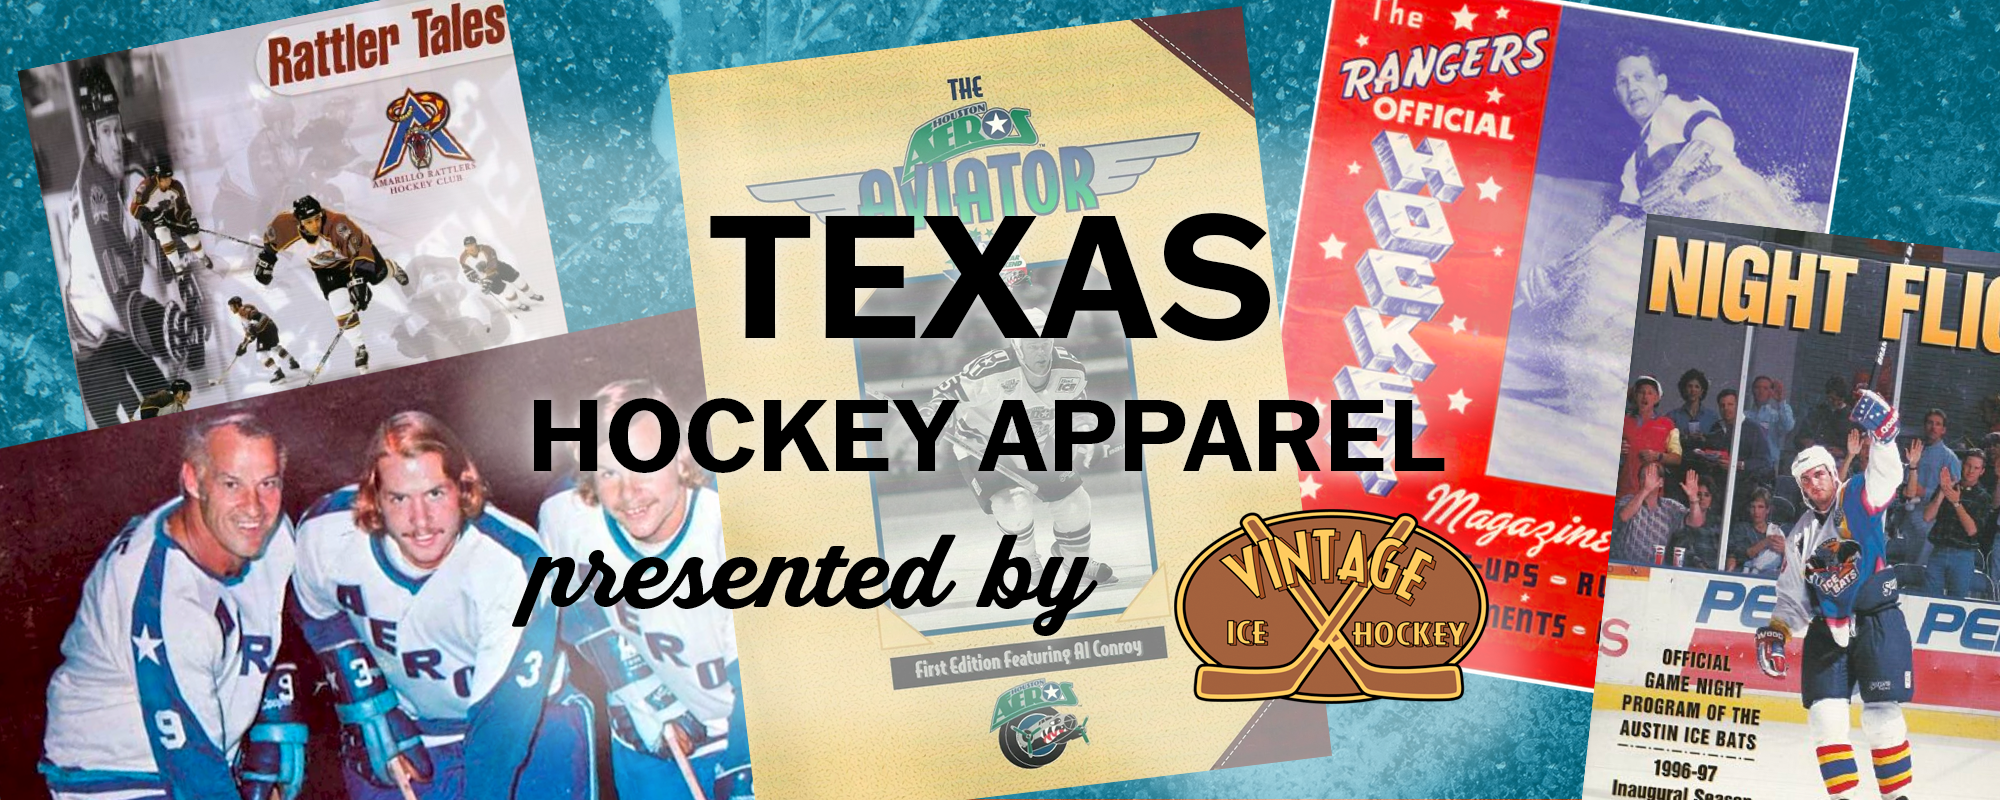 Vintage Texas minor league hockey apparel & commemorative merchandise